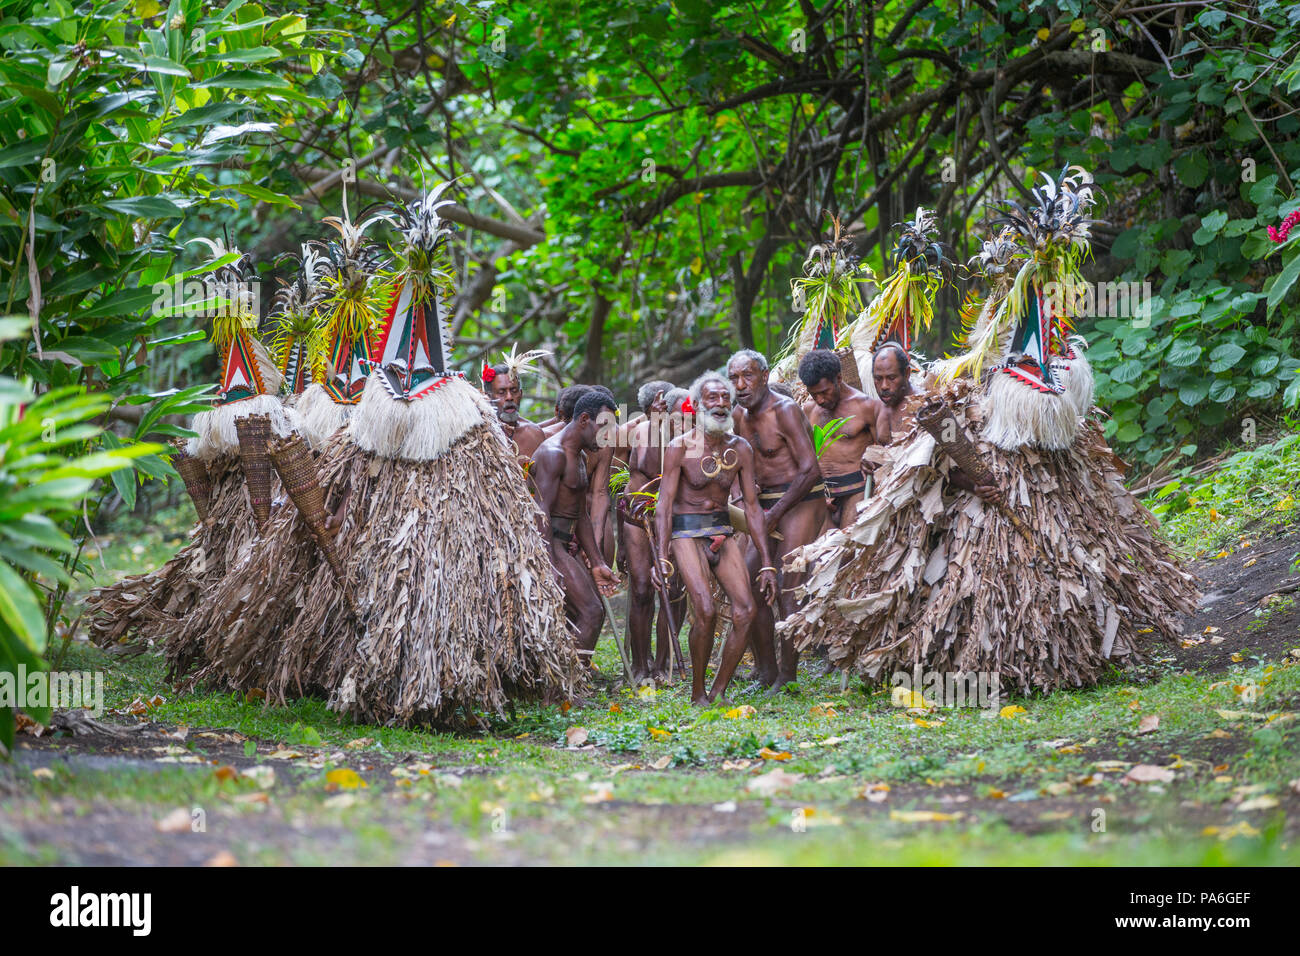 Rom-Tanz, Insel Ambrym, Vanuatu Stockfoto